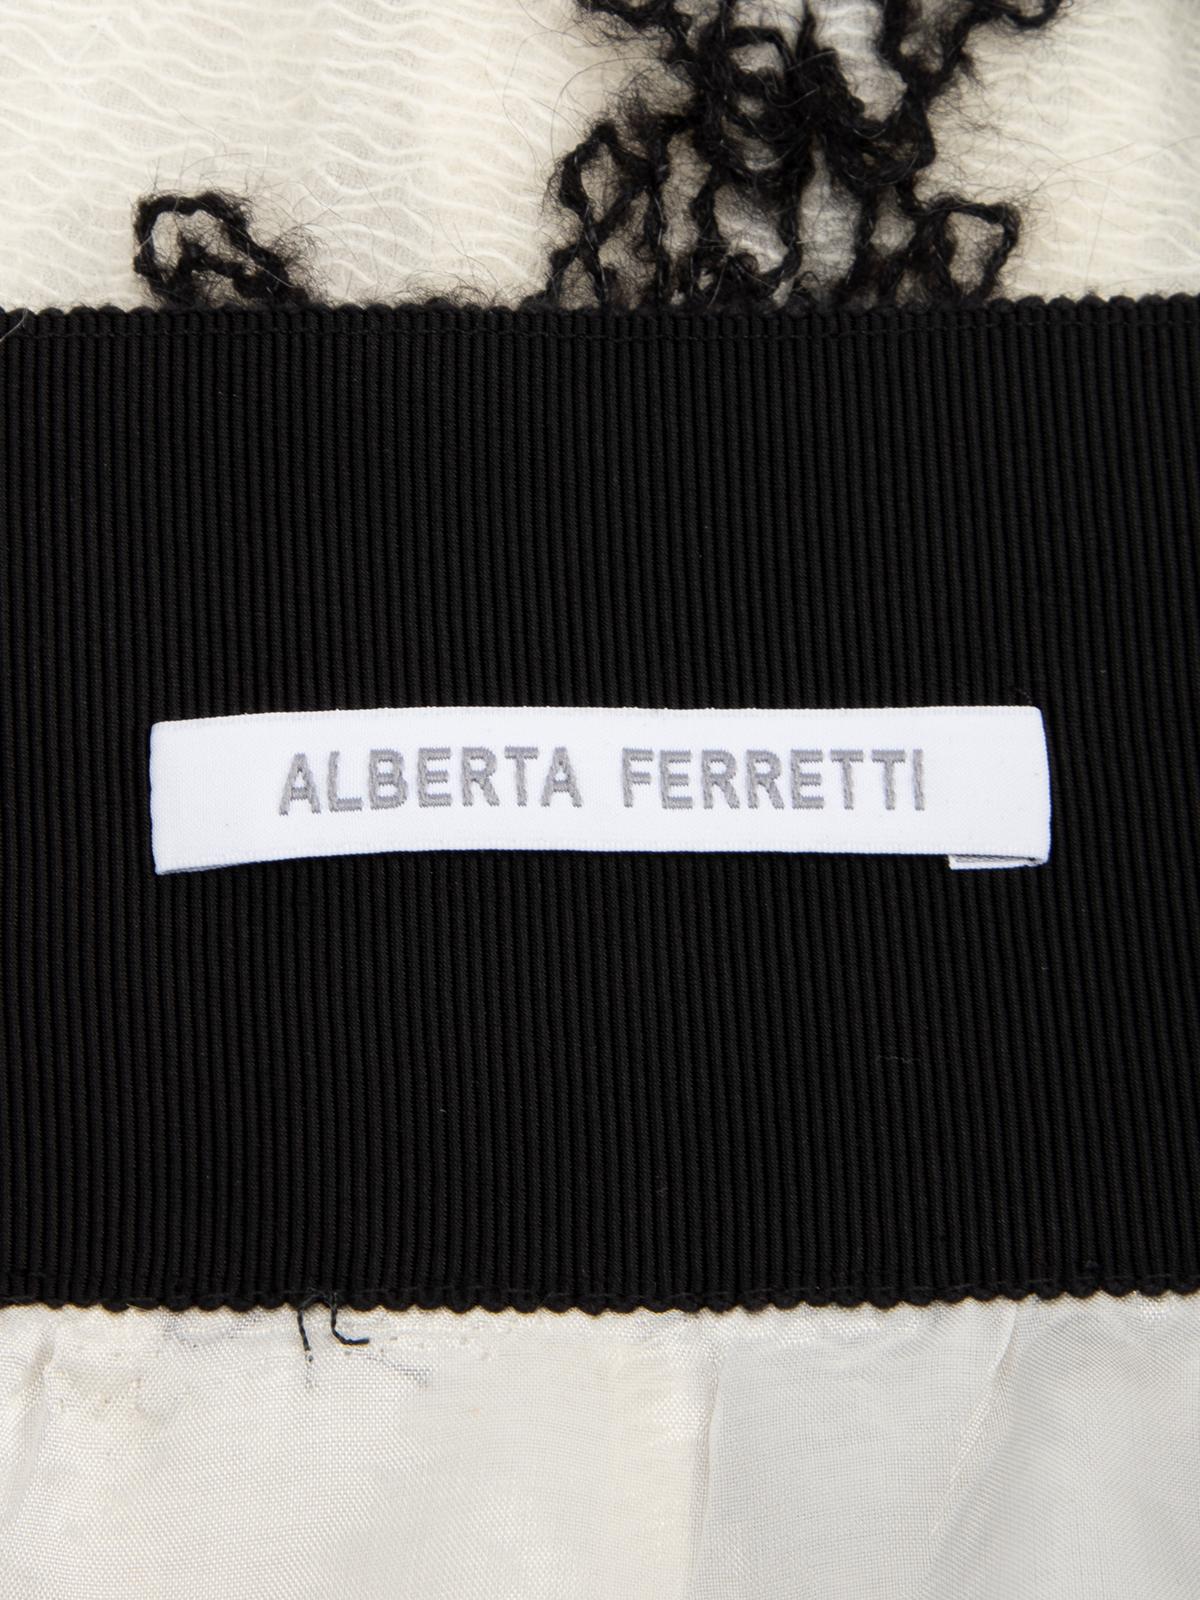 Pre-Loved Alberta Ferretti Women's Black &Cream Crochet Embellished Flared Skirt 2